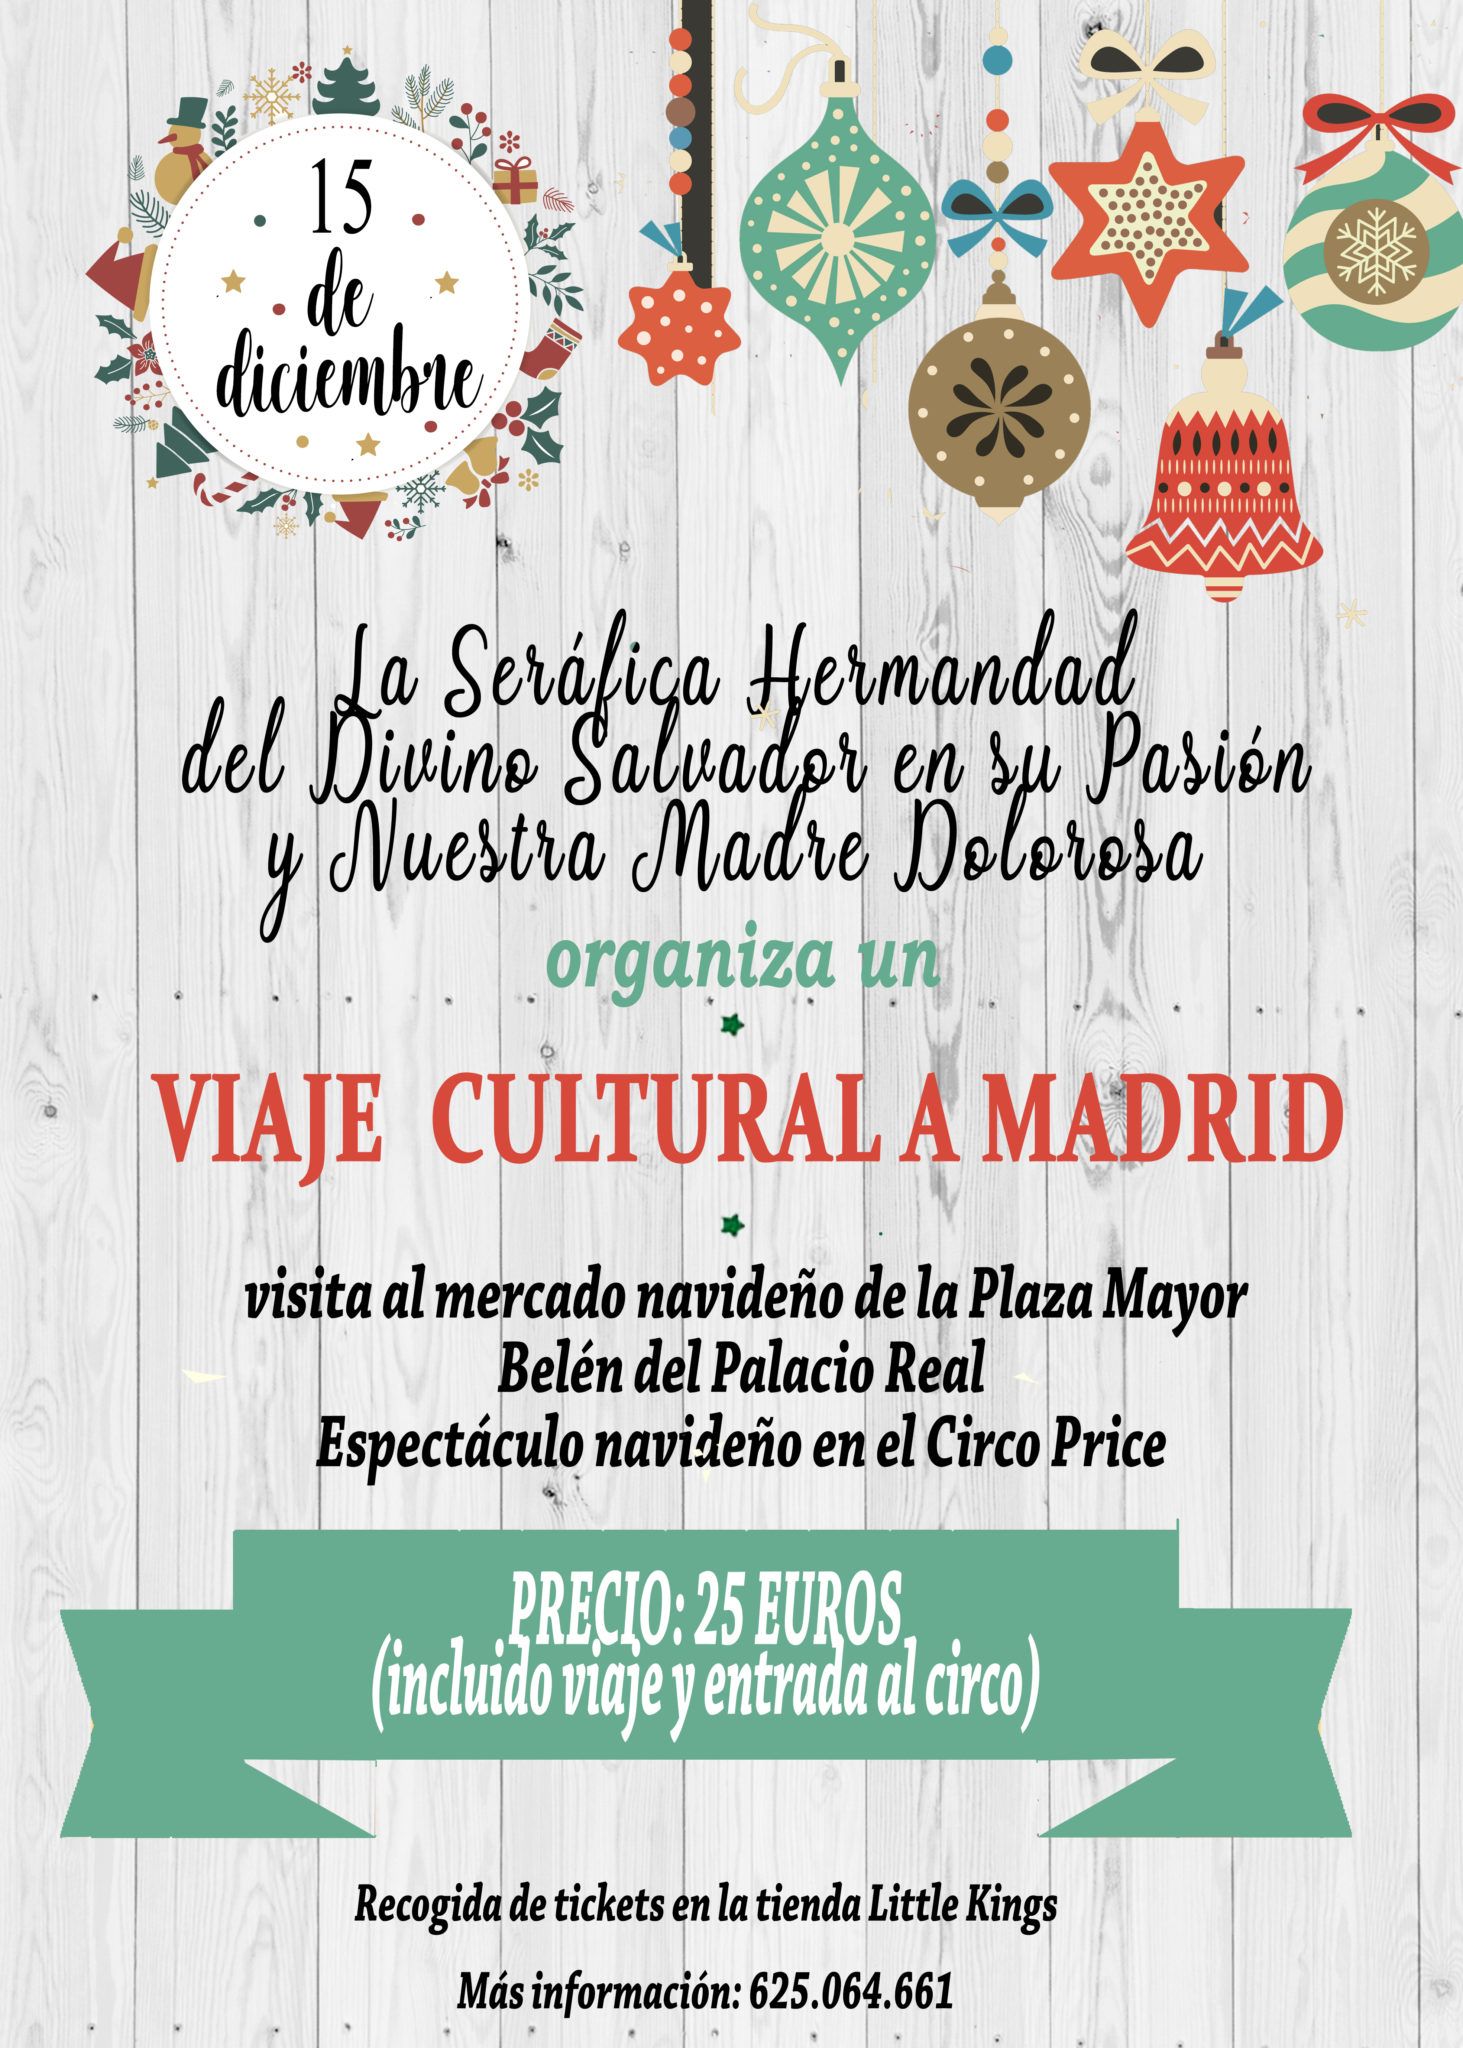 La Seráfica Hermandad de Béjar organiza una excursión cultural a Madrid para disfrutar del ambiente navideño